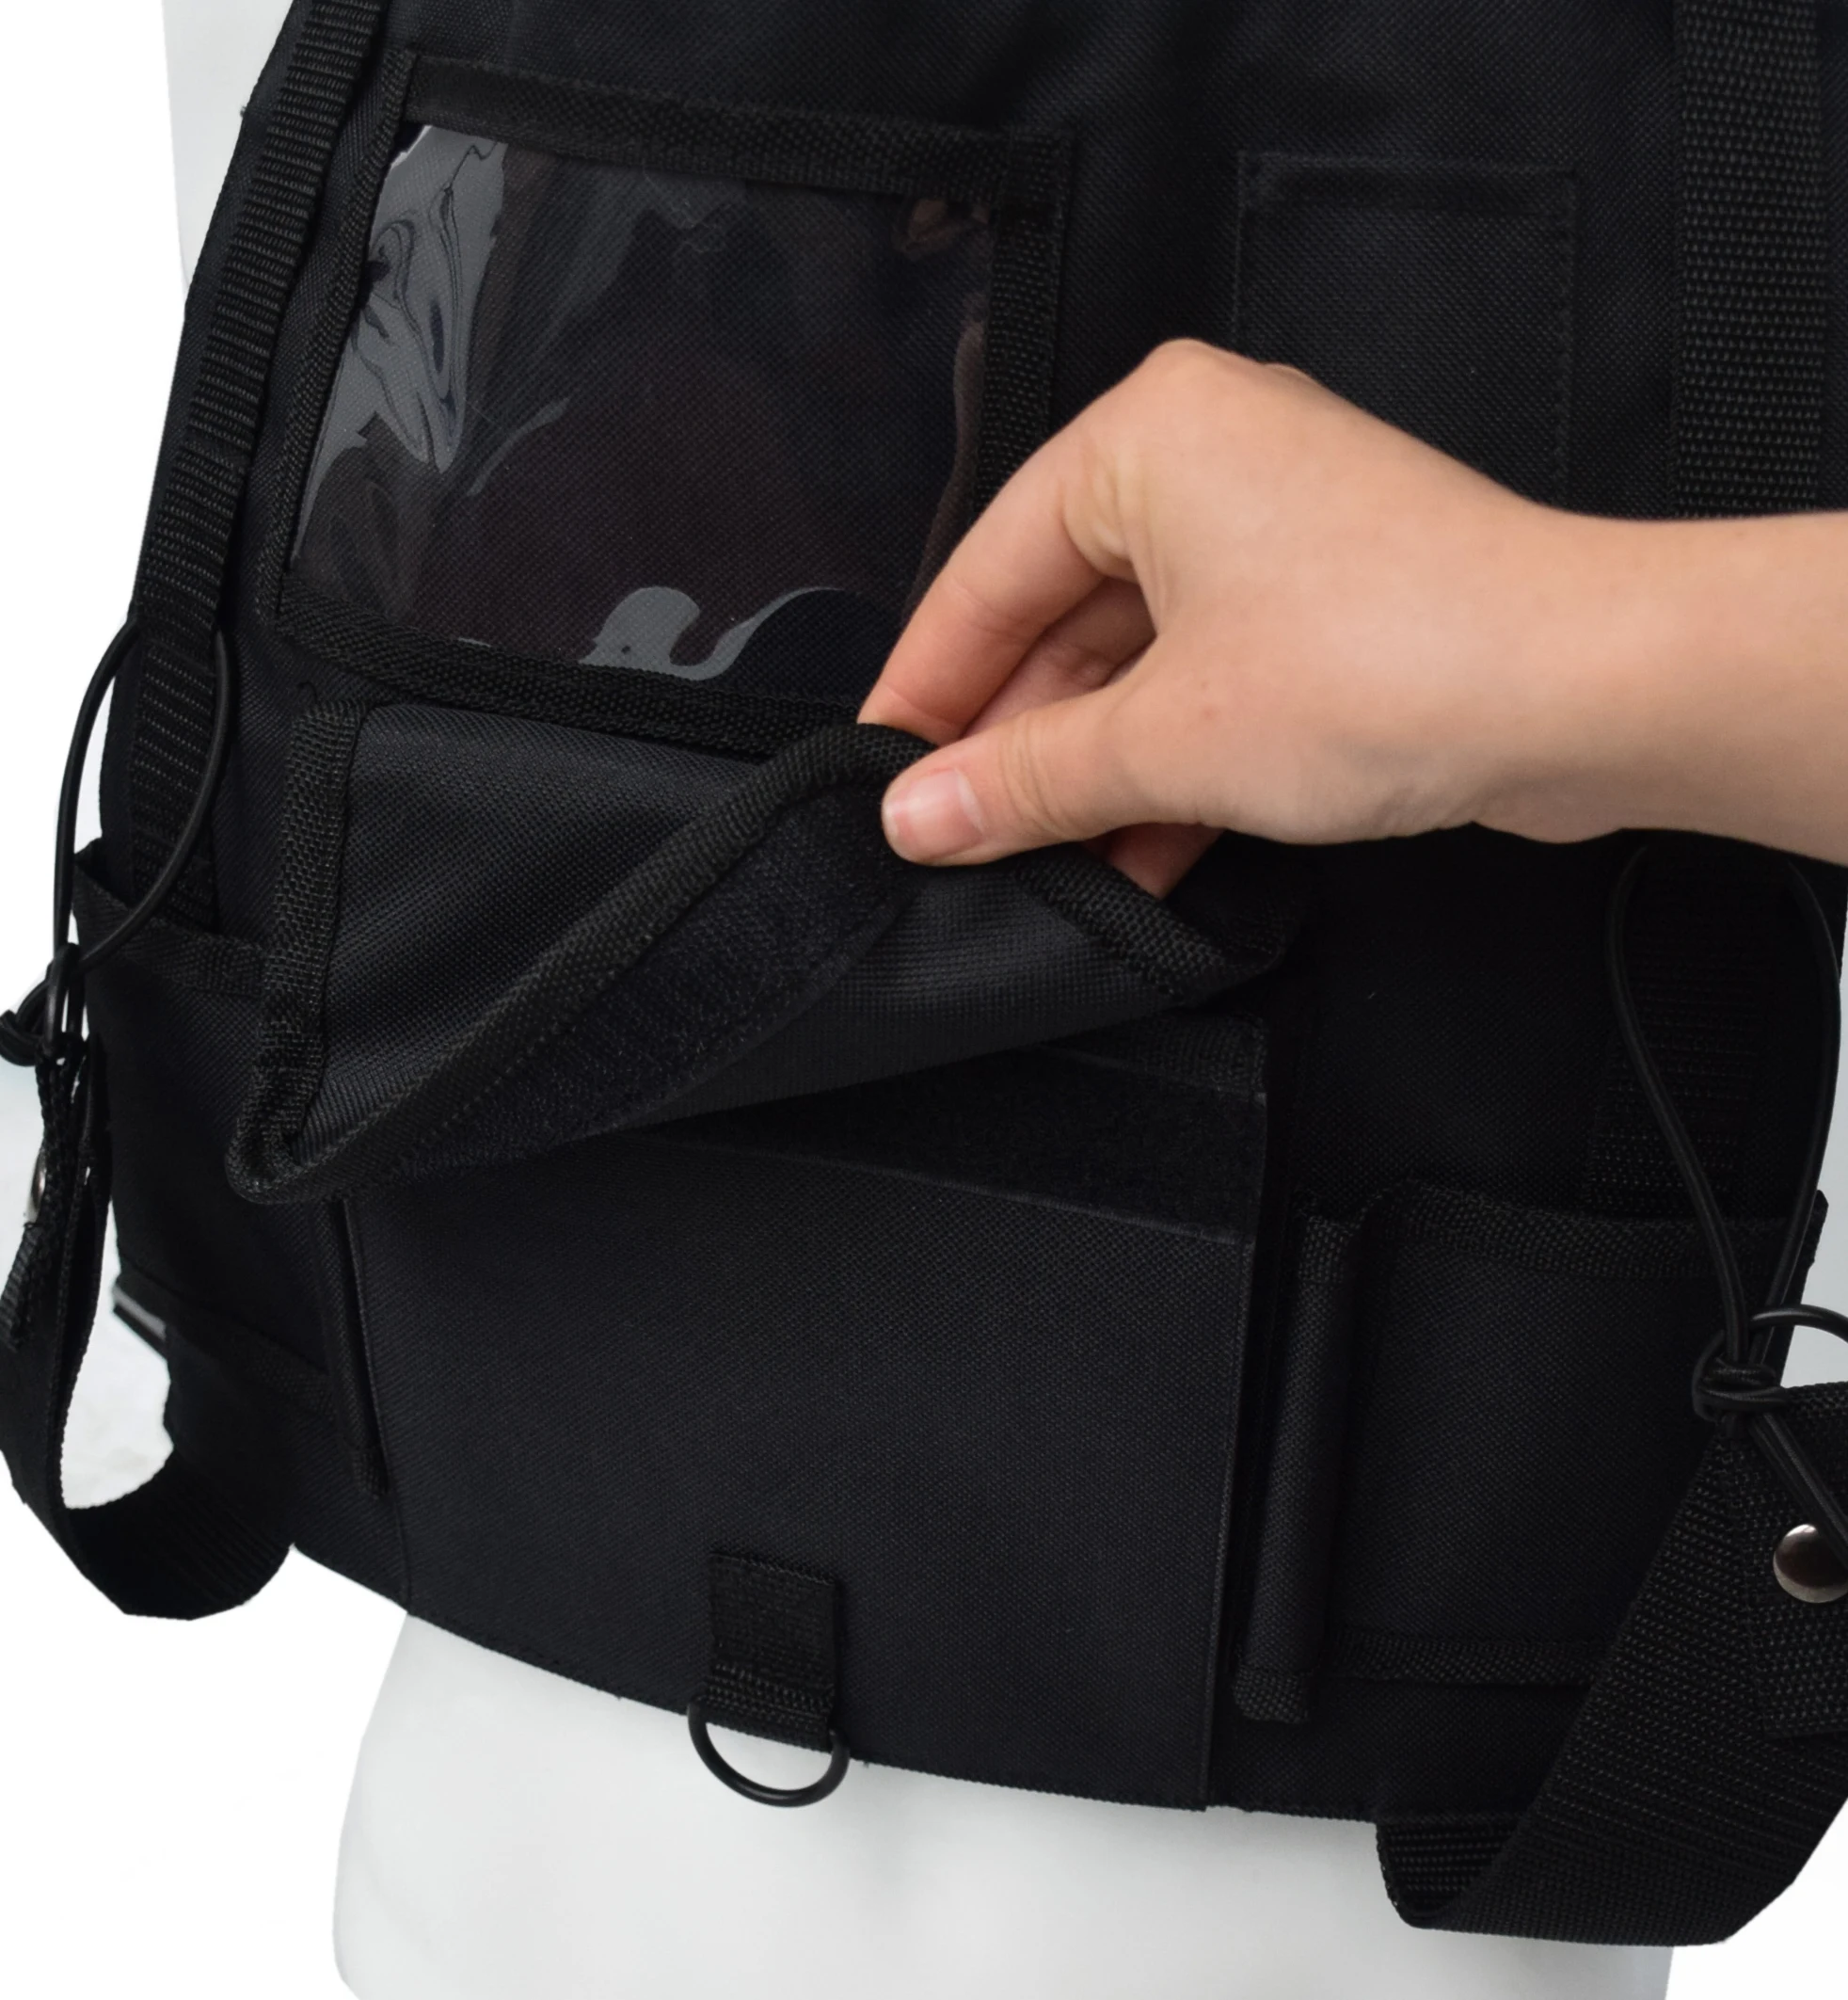 2019 тактическая сумка поясная Грудь Rig хип-хоп Уличная мужская сумка функциональная тактическая сумка жилет с облегченной модульной